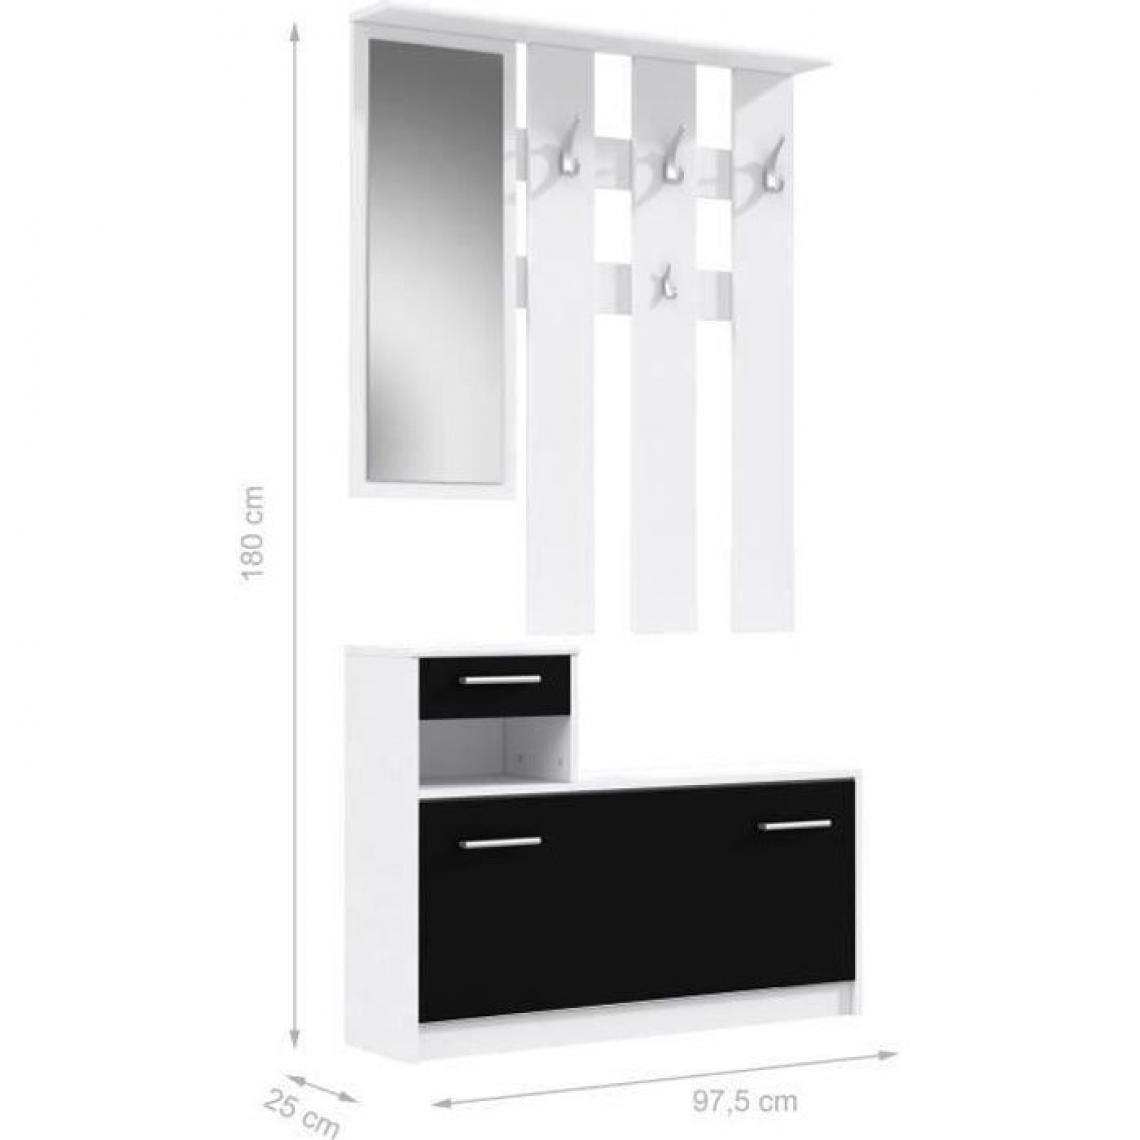 Cstore - PEILI - vestiaire d'entrée contemporain blanc et noir mat - l 97, 5 cm - Vestiaire